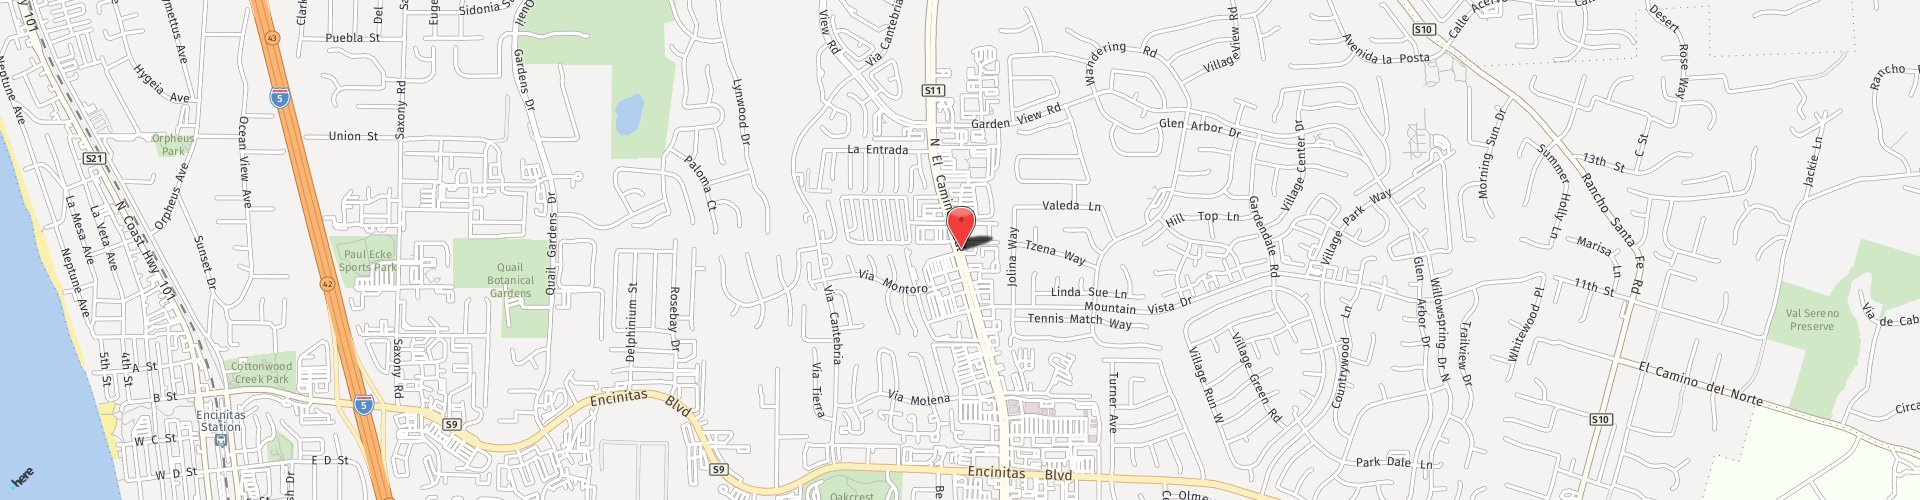 Location Map: 477 N. El Camino Real Encinitas, CA 92024